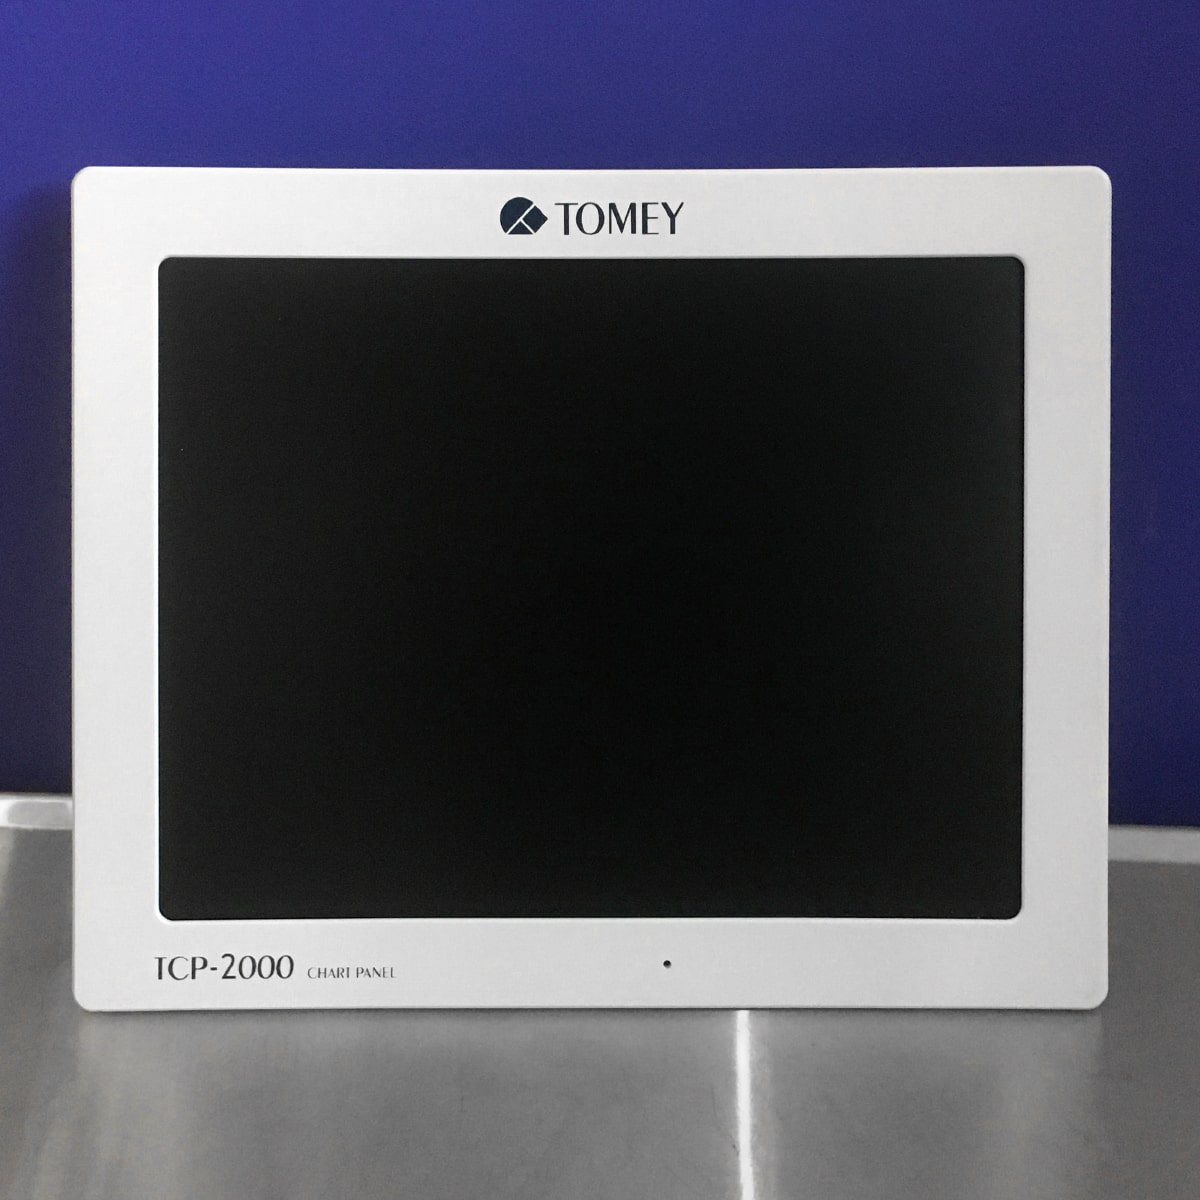 Экранный проектор знаков TCP-2000, Tomey (Япония) 2